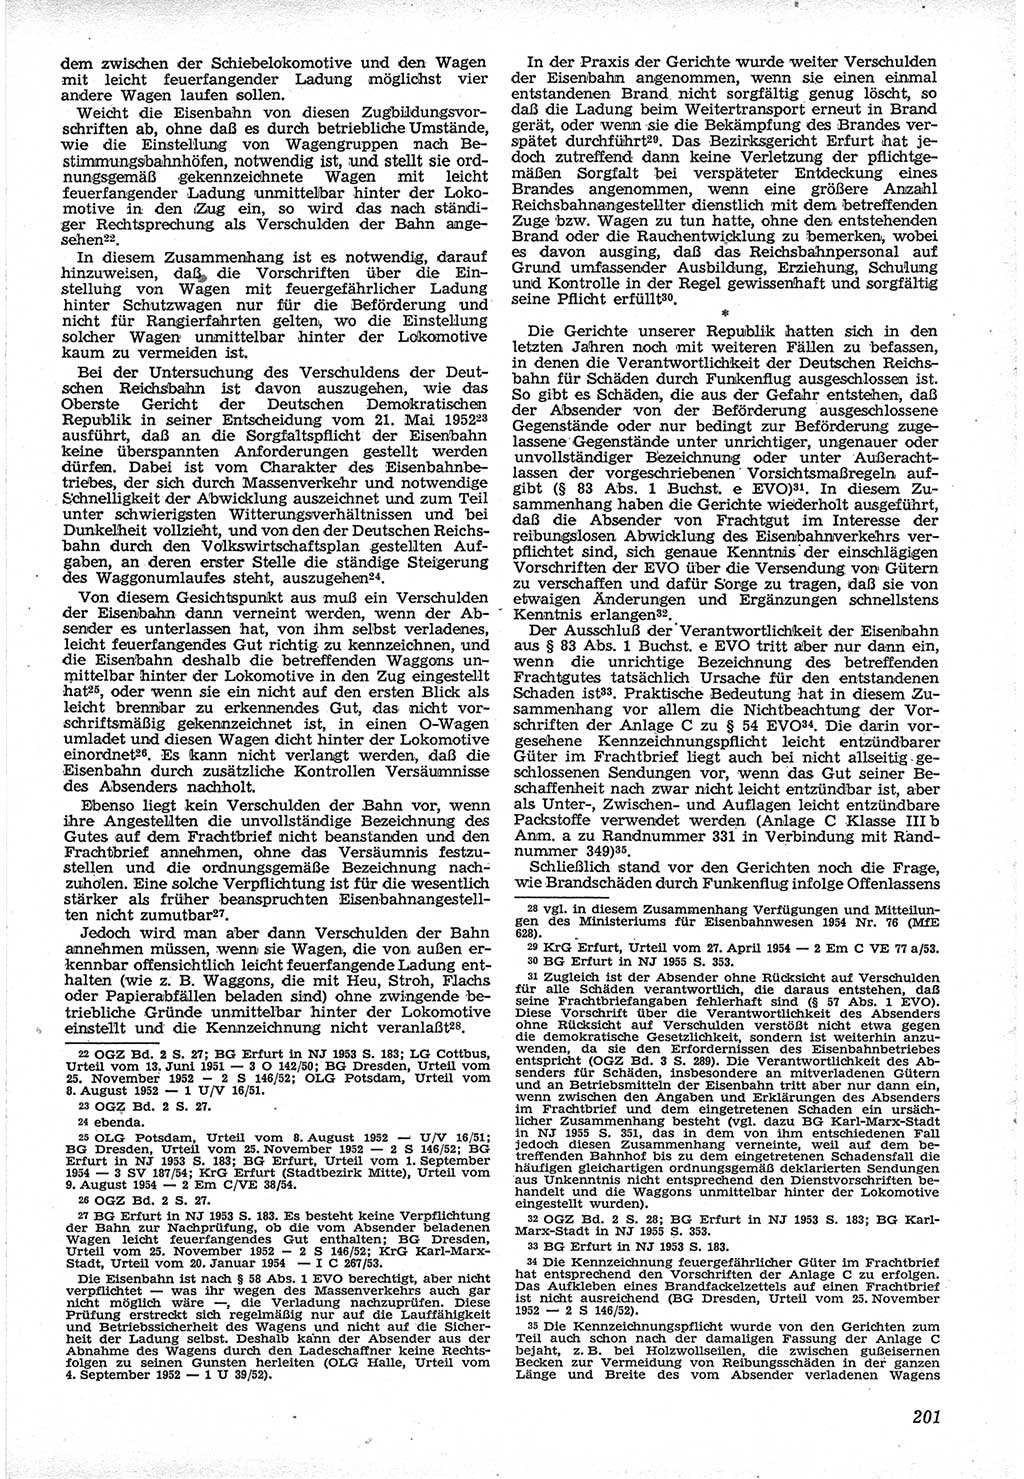 Neue Justiz (NJ), Zeitschrift für Recht und Rechtswissenschaft [Deutsche Demokratische Republik (DDR)], 12. Jahrgang 1958, Seite 201 (NJ DDR 1958, S. 201)